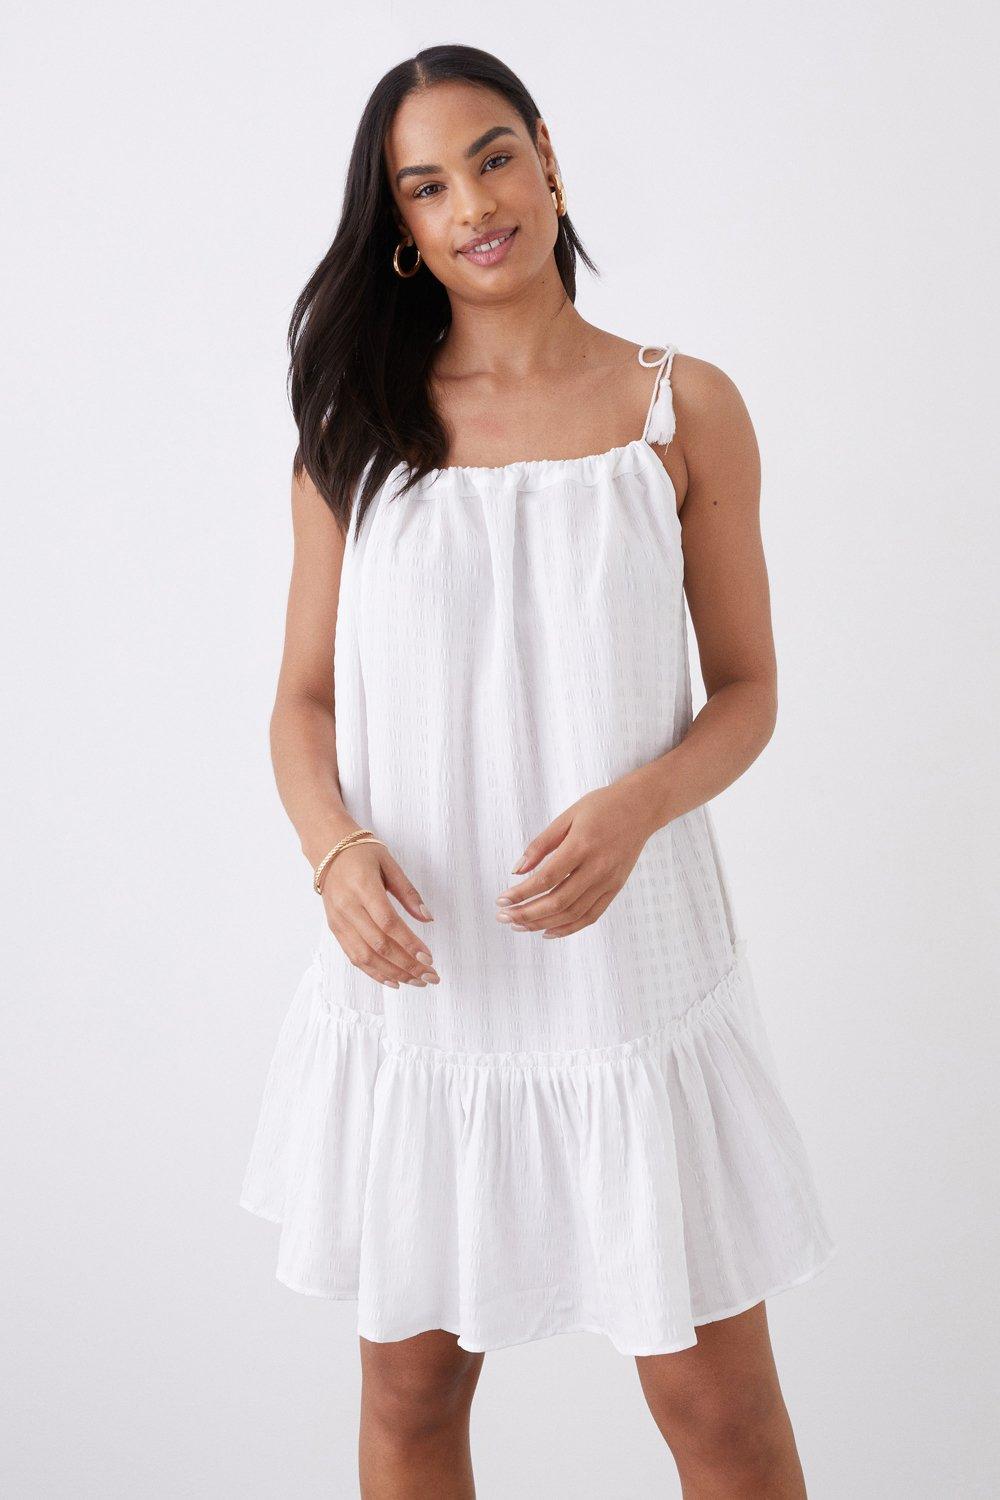 Women’s Mini Tassel Beach Dress - white - L